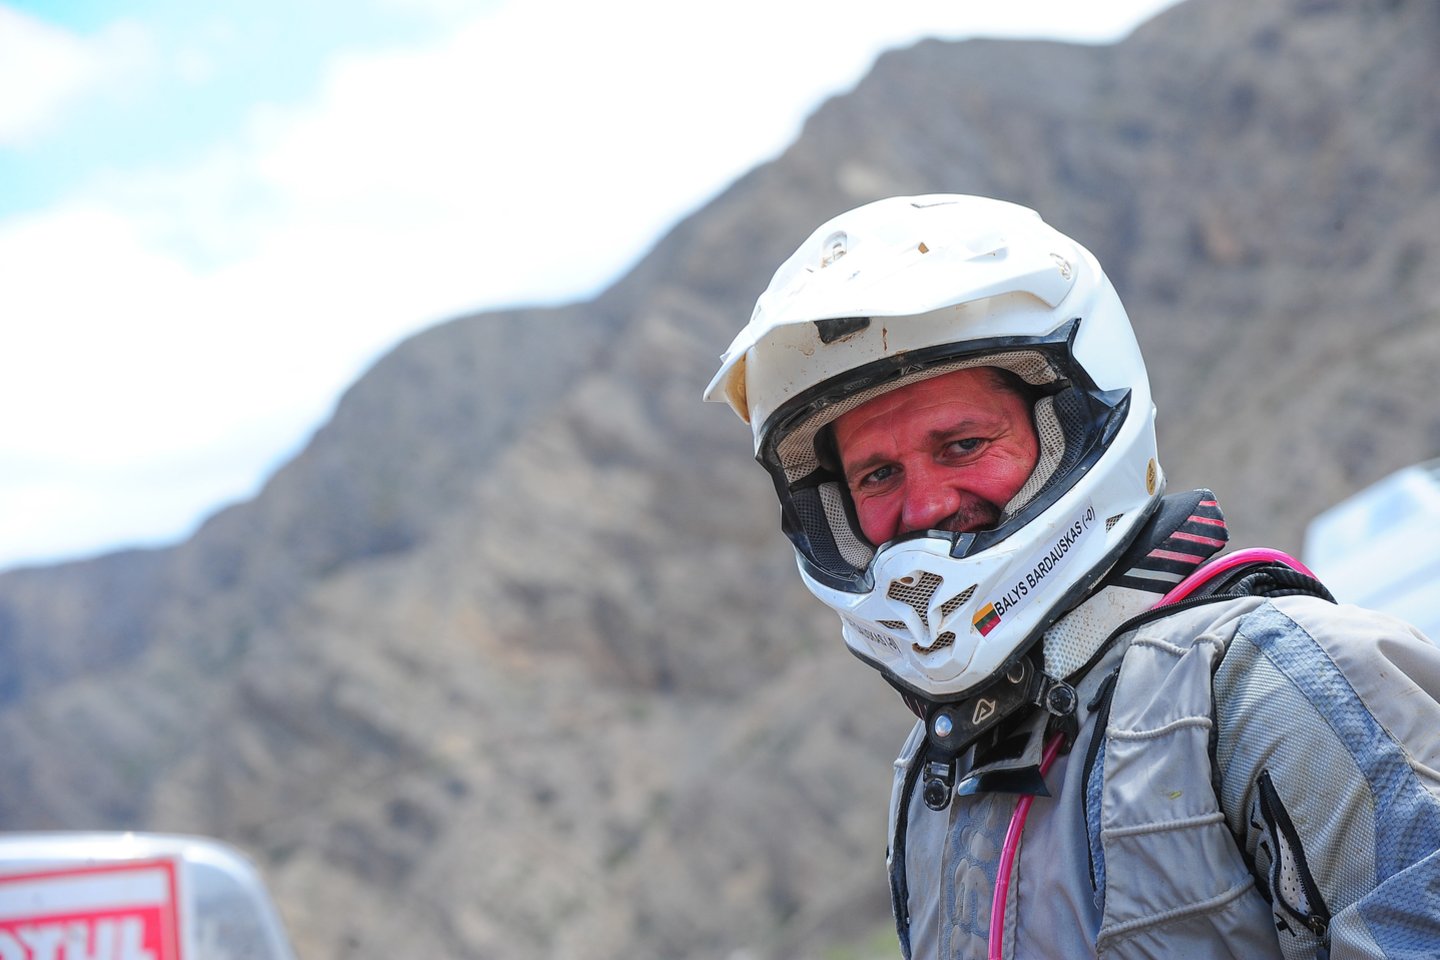  Ne viename Dakaro ralyje motociklu važiavęs B.Bardauskas tvirtina, kad leidimo važiuoti A juosta pirmiausia prašo dėl saugumo. <br> Danielio Halaco nuotr.